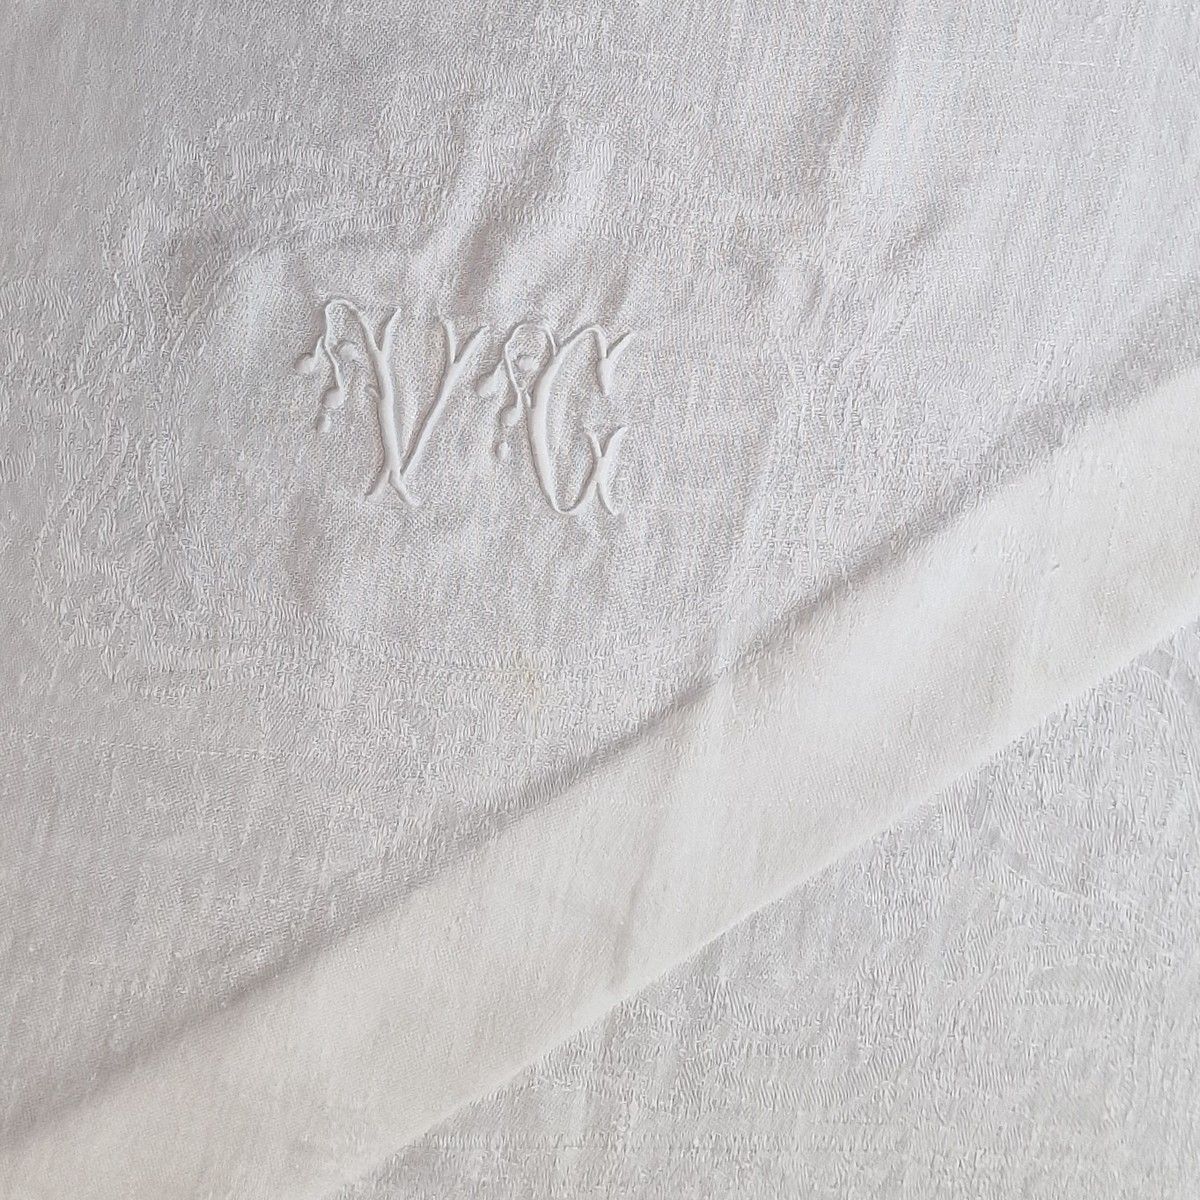 Null 白色棉锦缎桌布 12 件套 约 1900 年，饰有编织的康乃馨卷轴和用布尔登针法绣有叶状白色字母的圆点 VG
66 x 76 厘米 
BSC
(按原样&hellip;